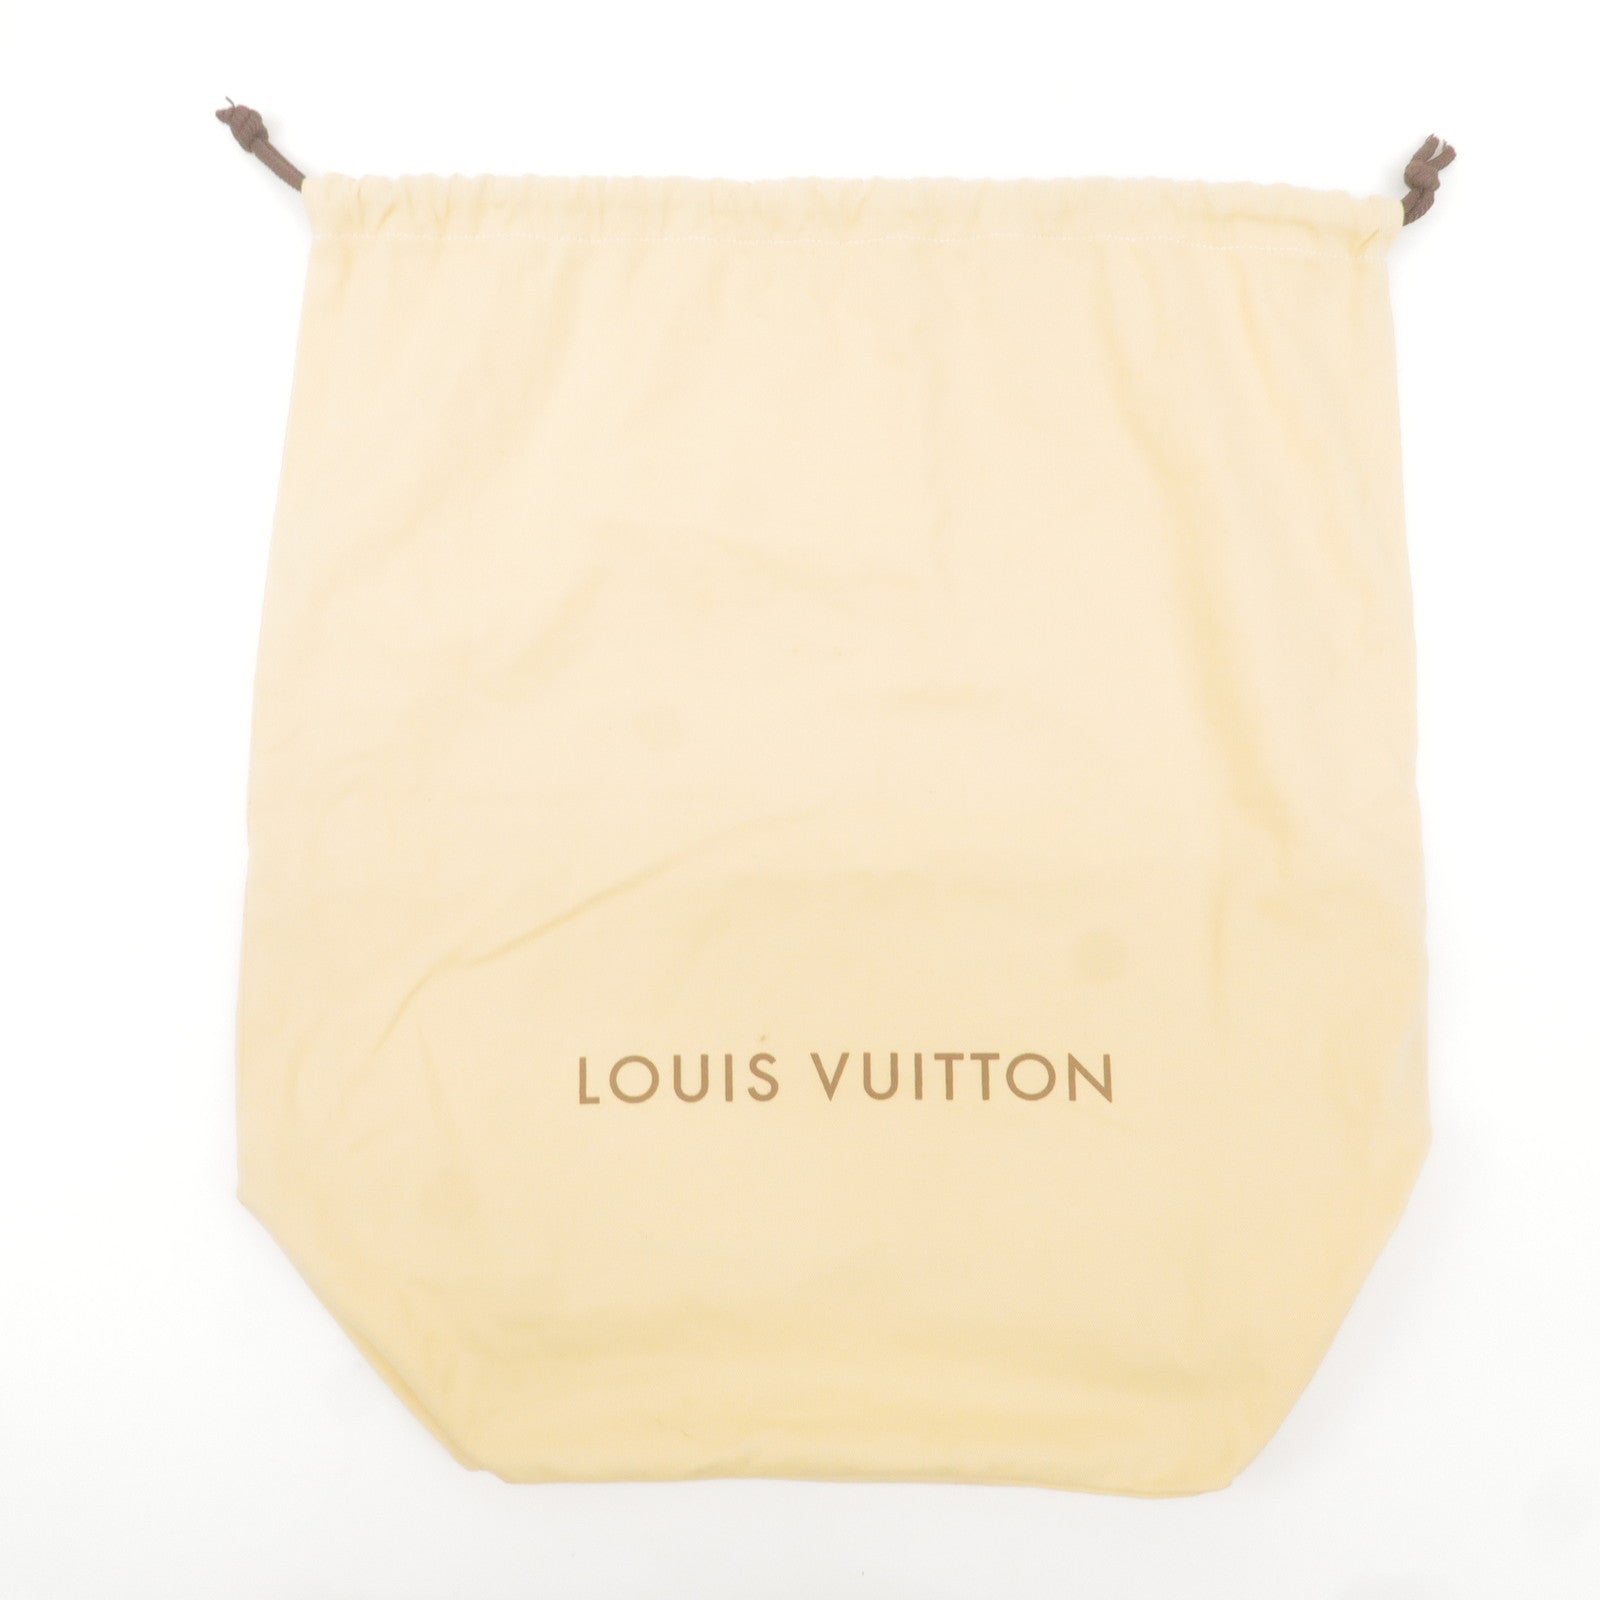 Louis Vuitton TAN WITH BROWN WRITING DRAWSTRING STORAGE BAG 15 3/4 X 9 IN